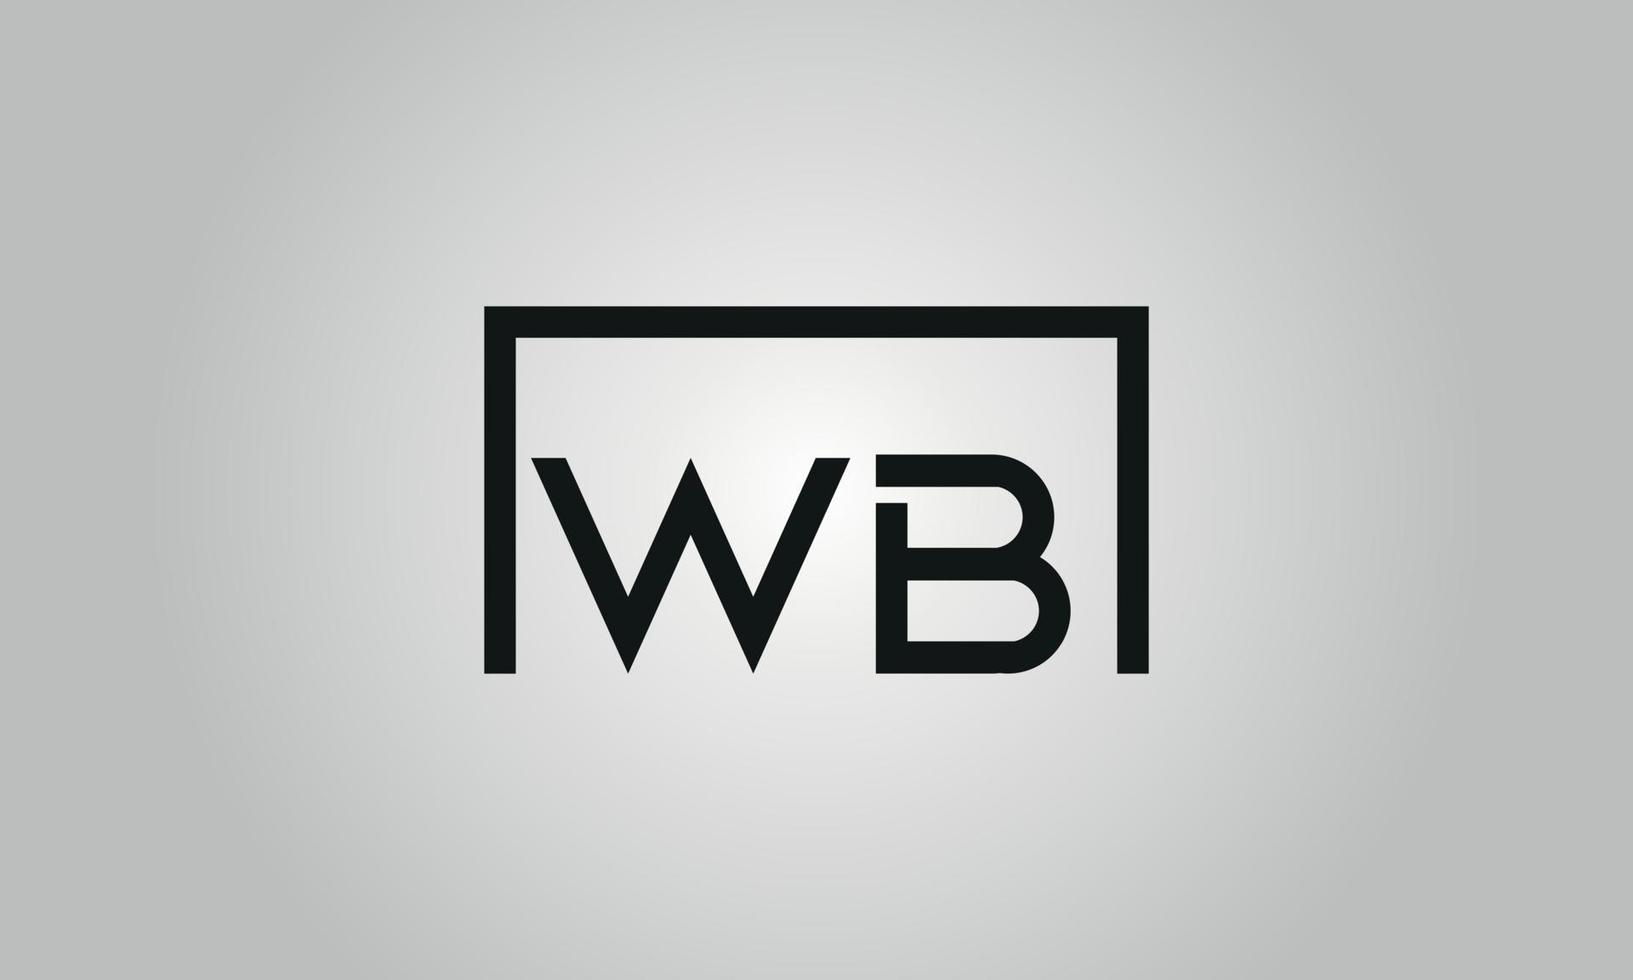 Buchstabe wb Logo-Design. wb-Logo mit quadratischer Form in schwarzen Farben Vektor kostenlose Vektorvorlage.